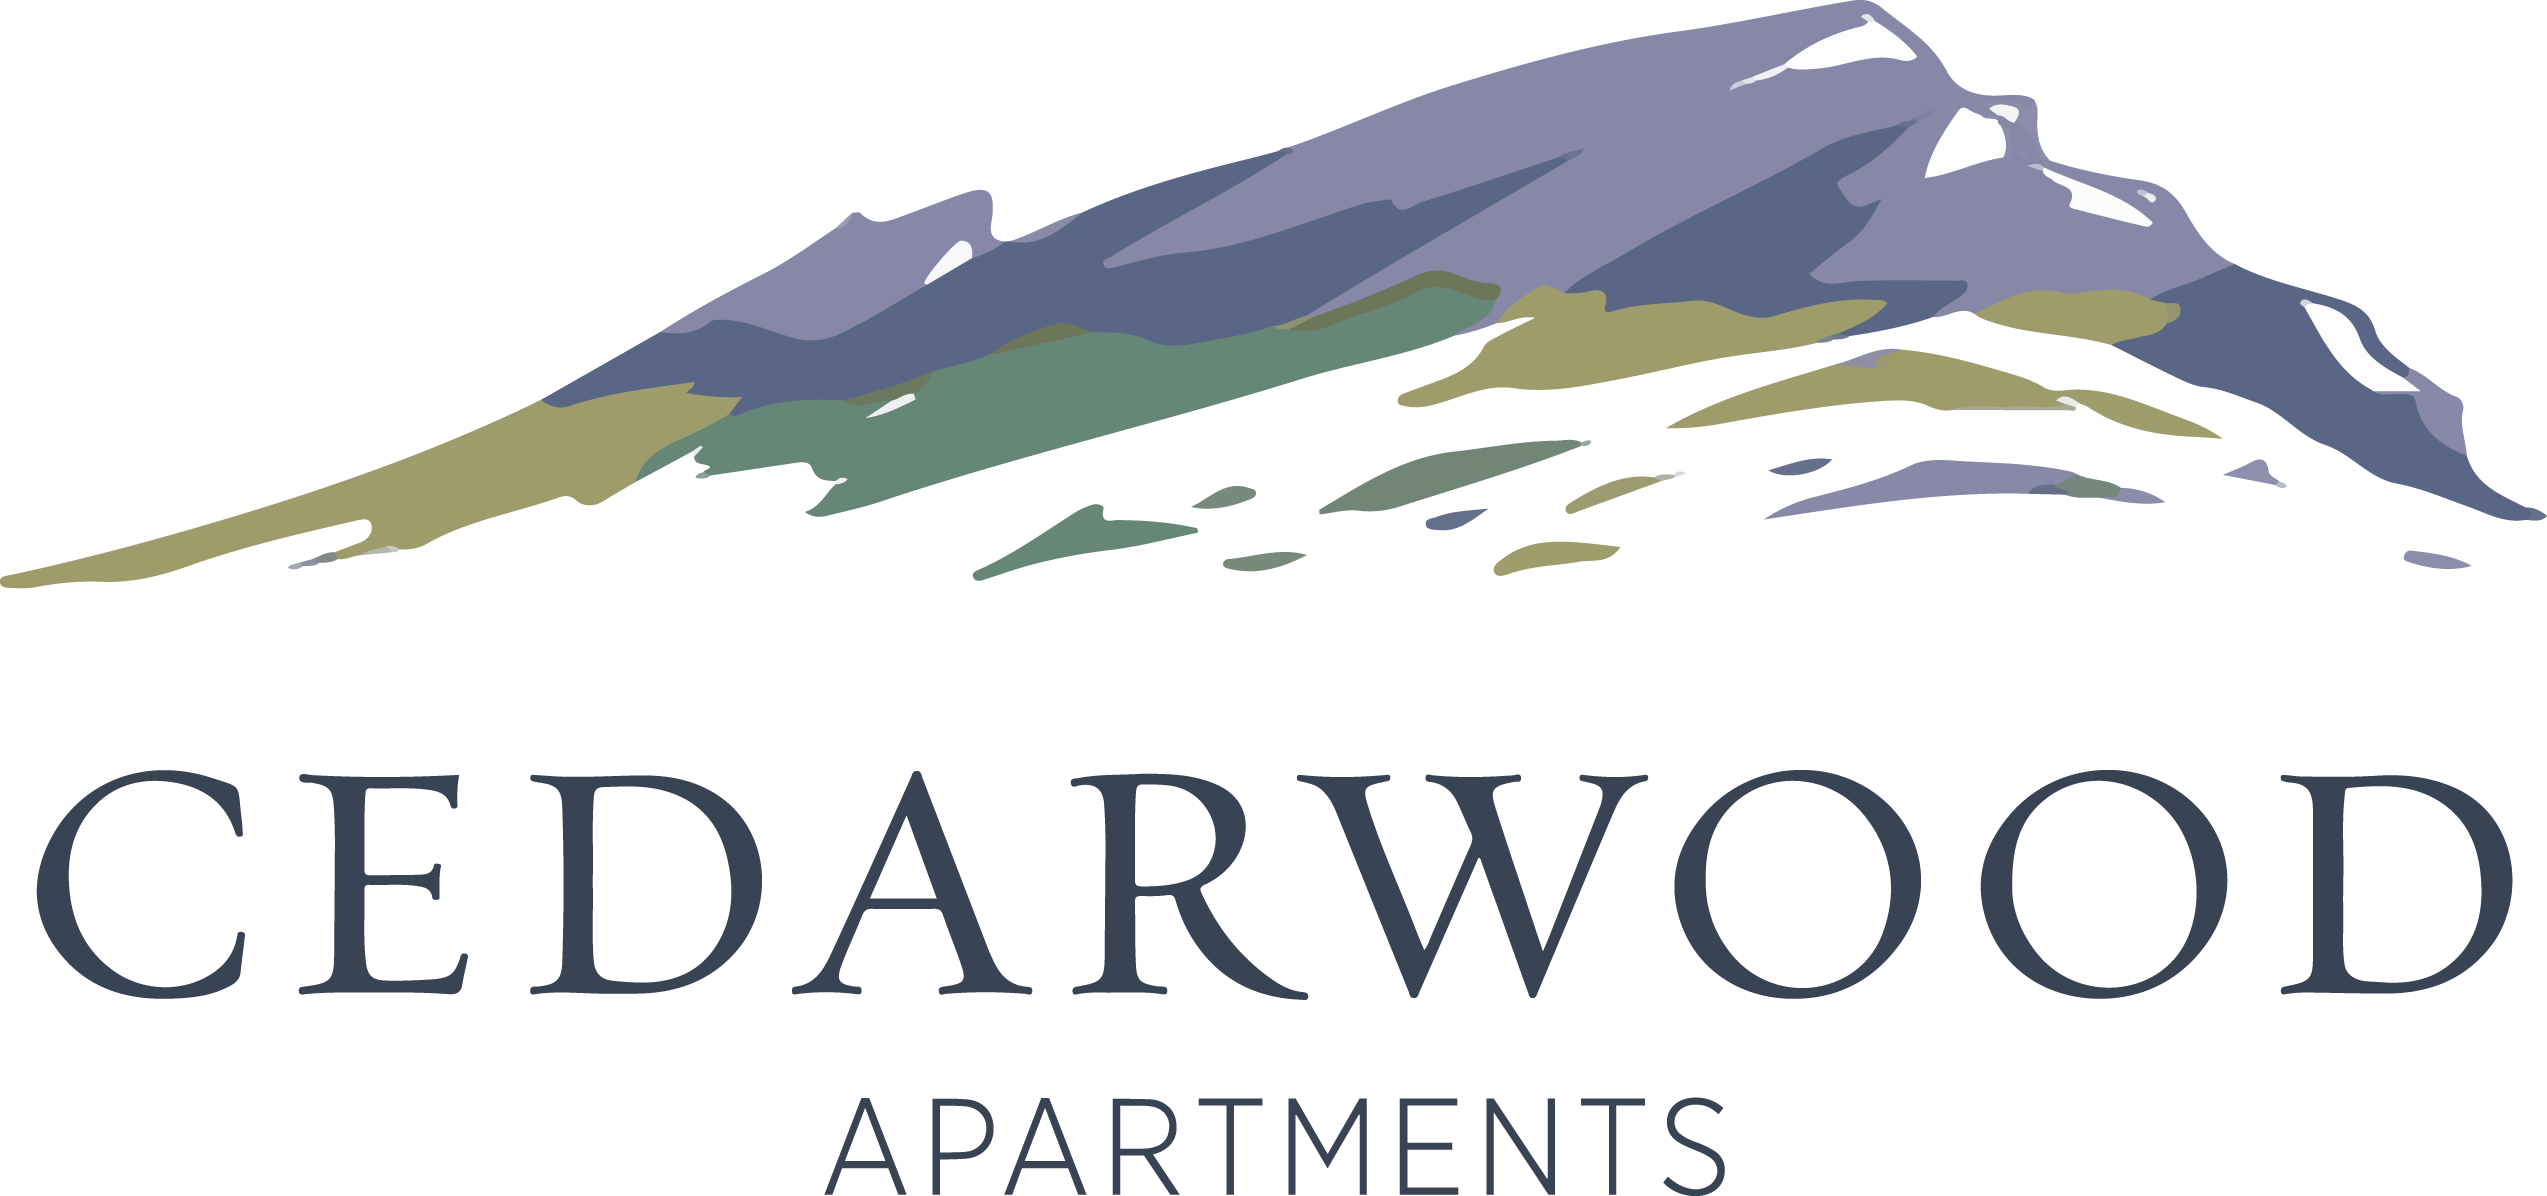 Cedarwood Apartments Logo